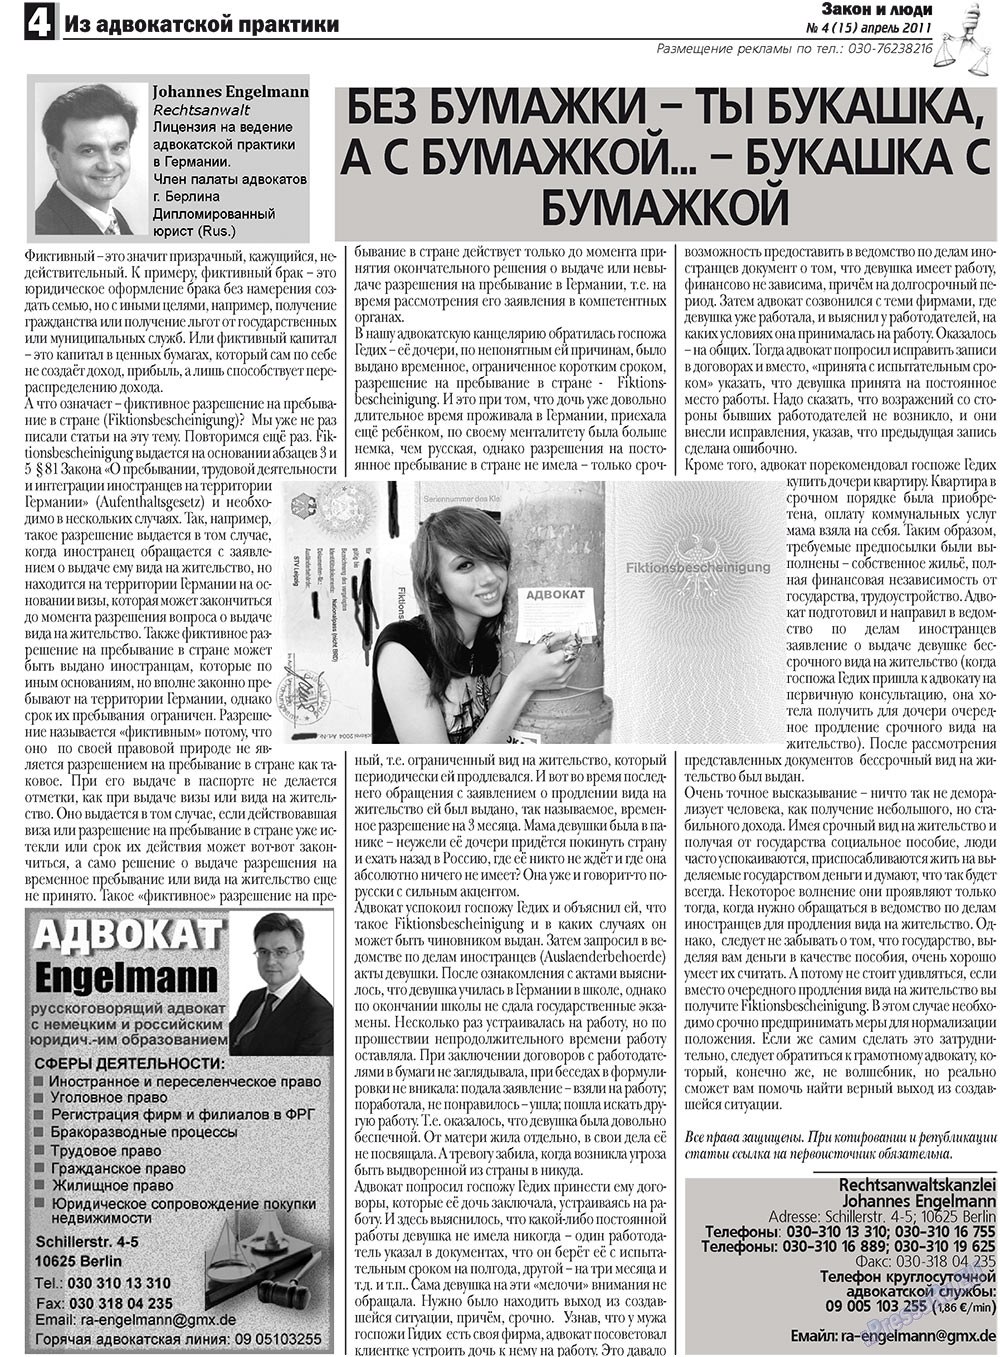 Закон и люди (газета). 2011 год, номер 4, стр. 4